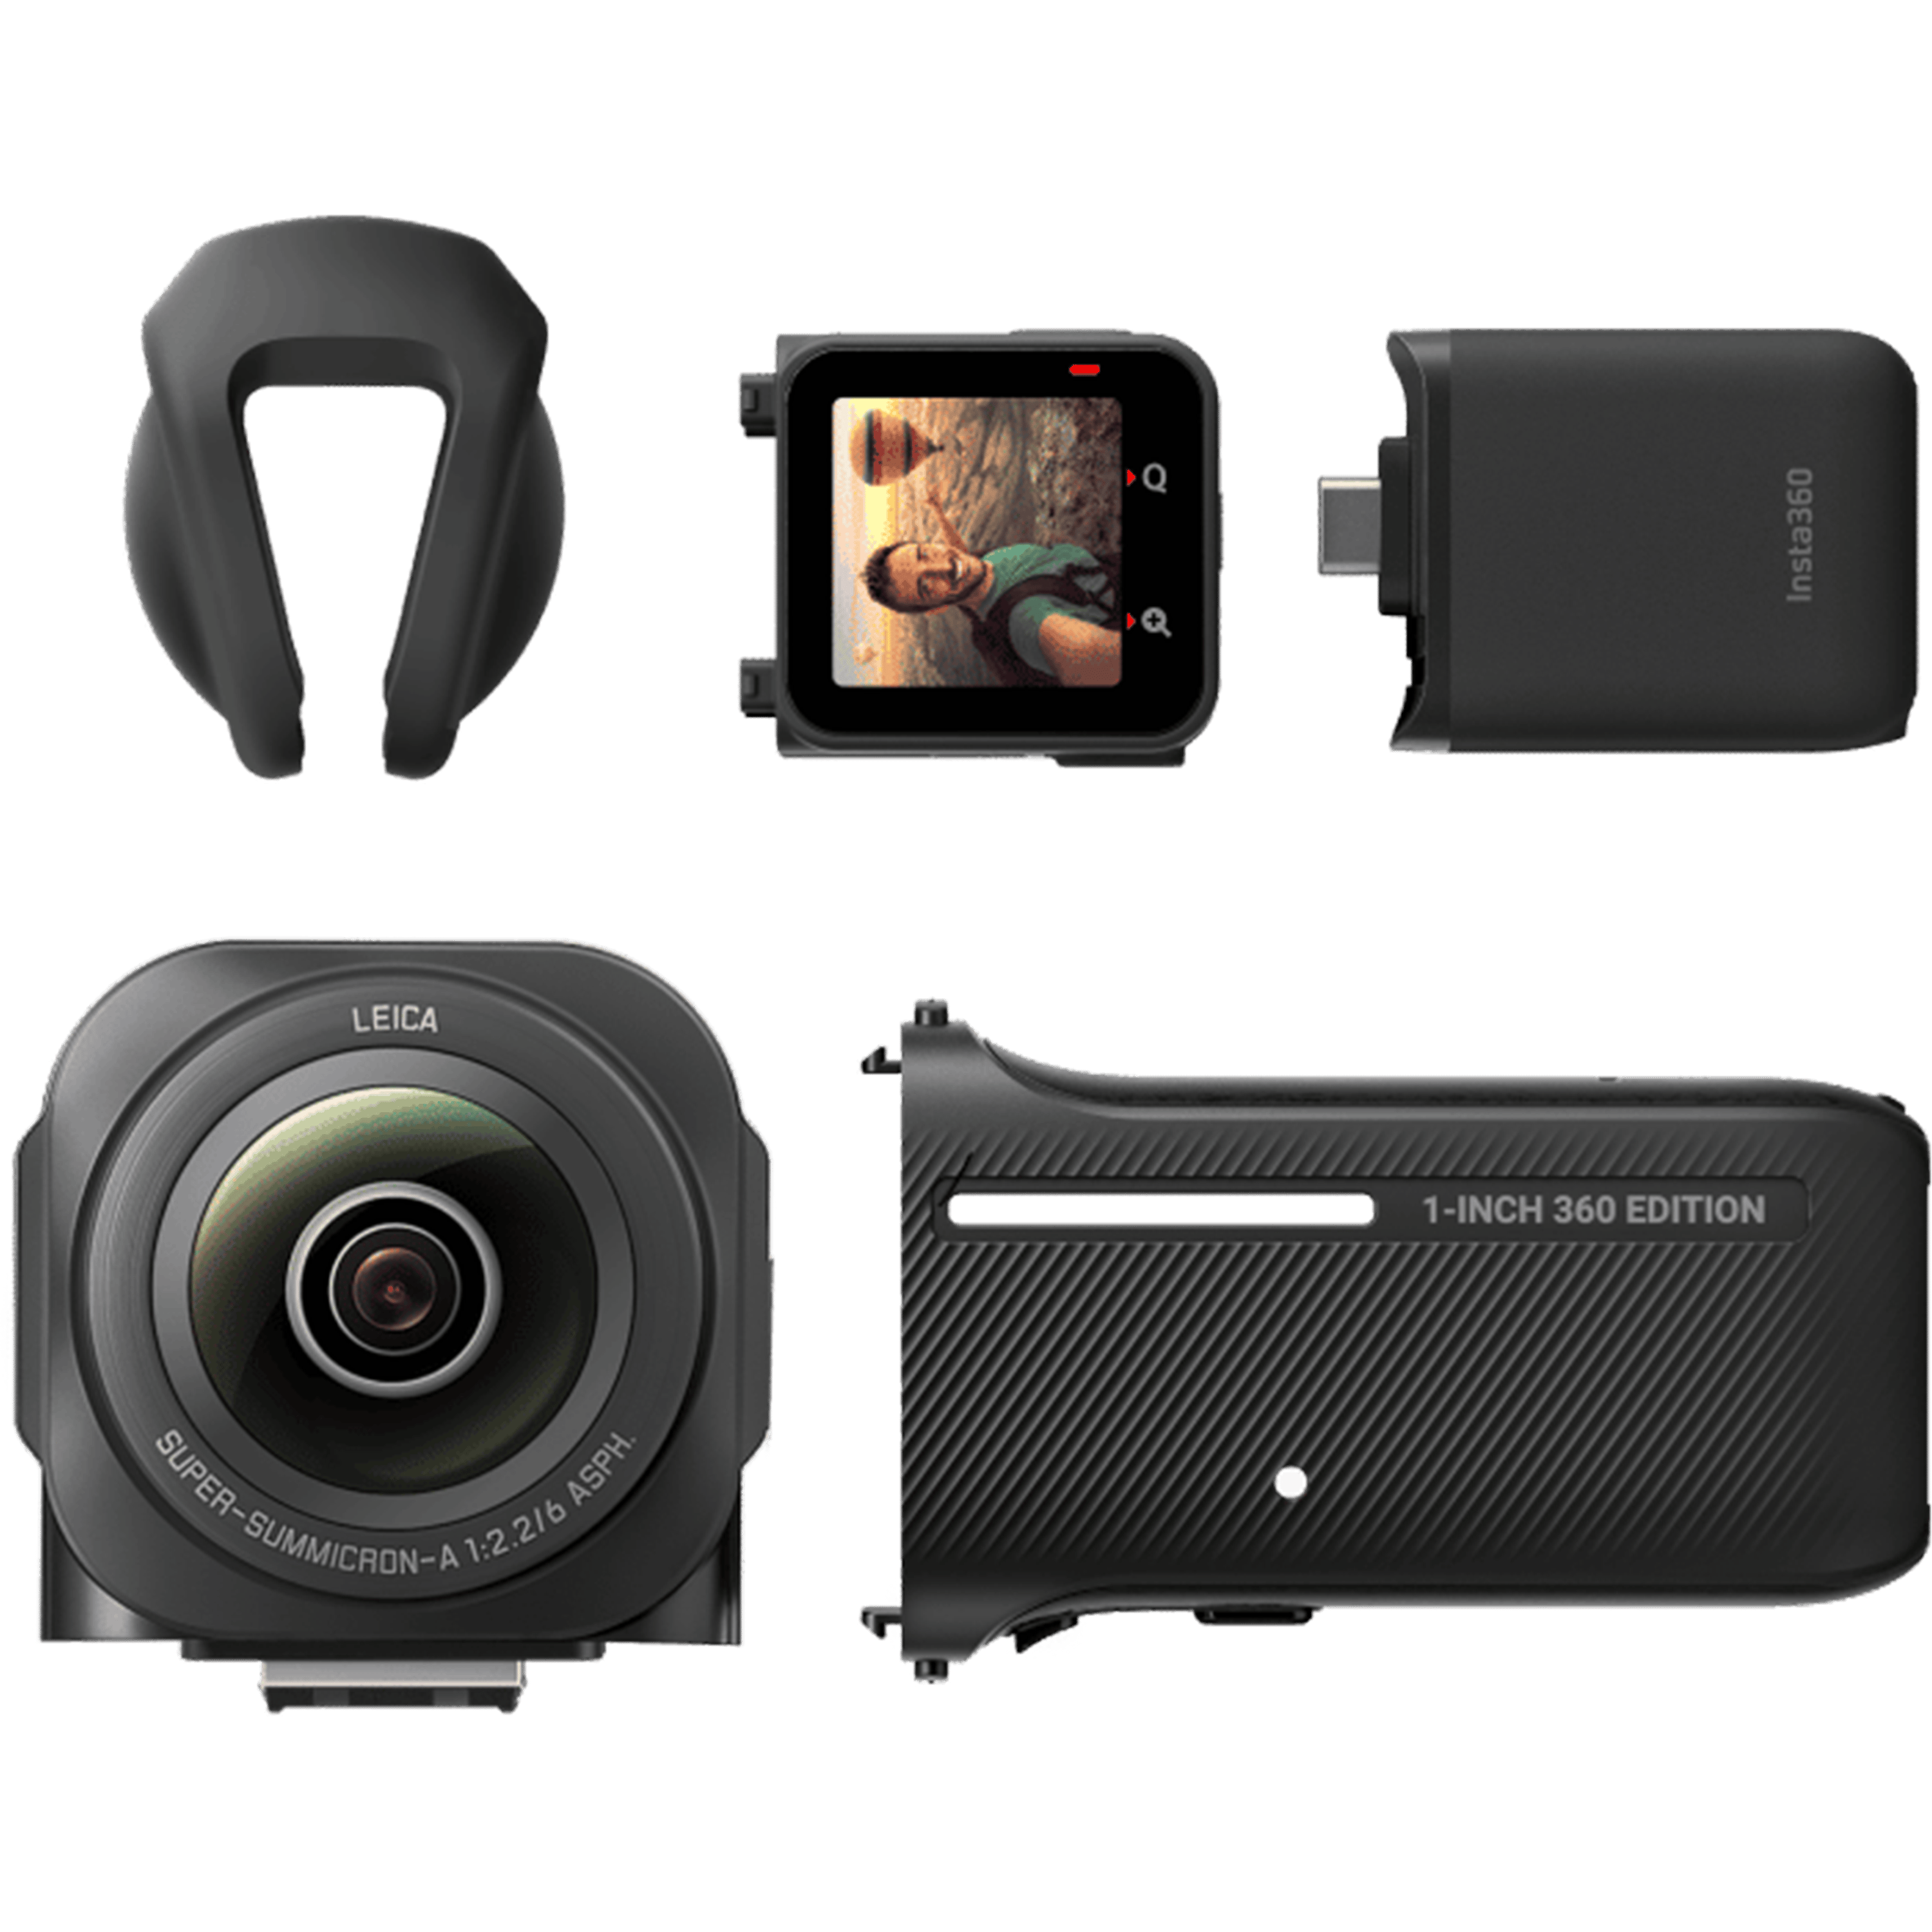 מצלמה Insta360 ONE RS 1-Inch 360